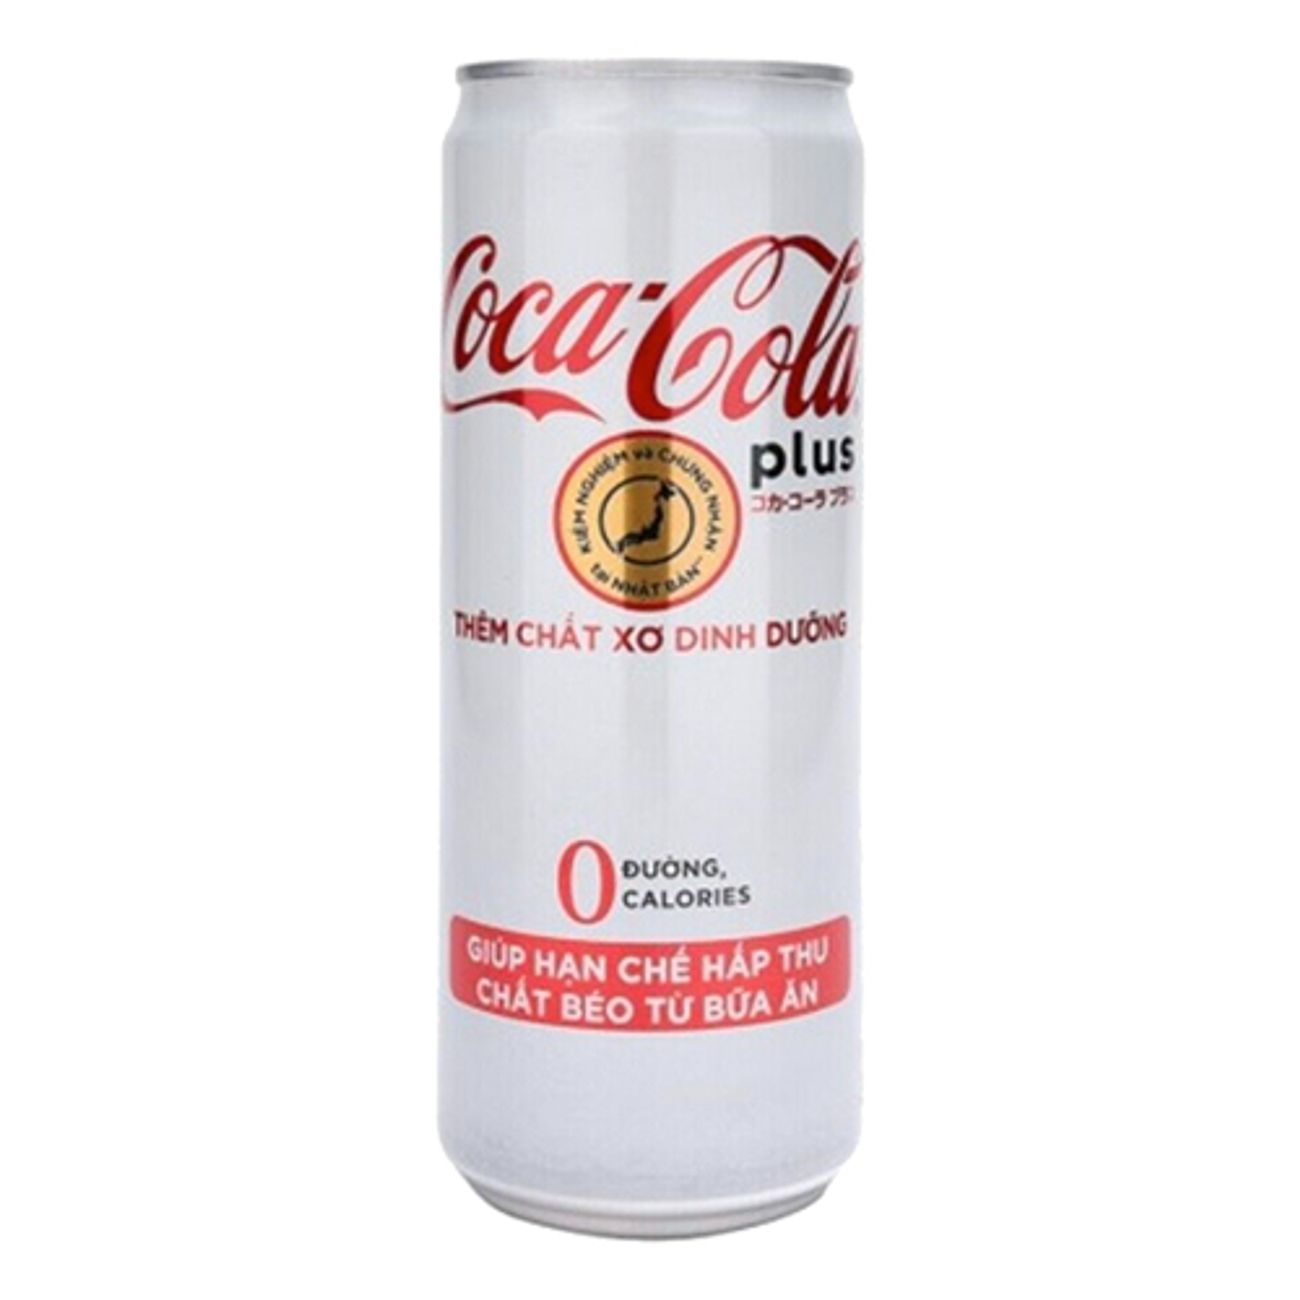 coca-cola-plus-fiber-1